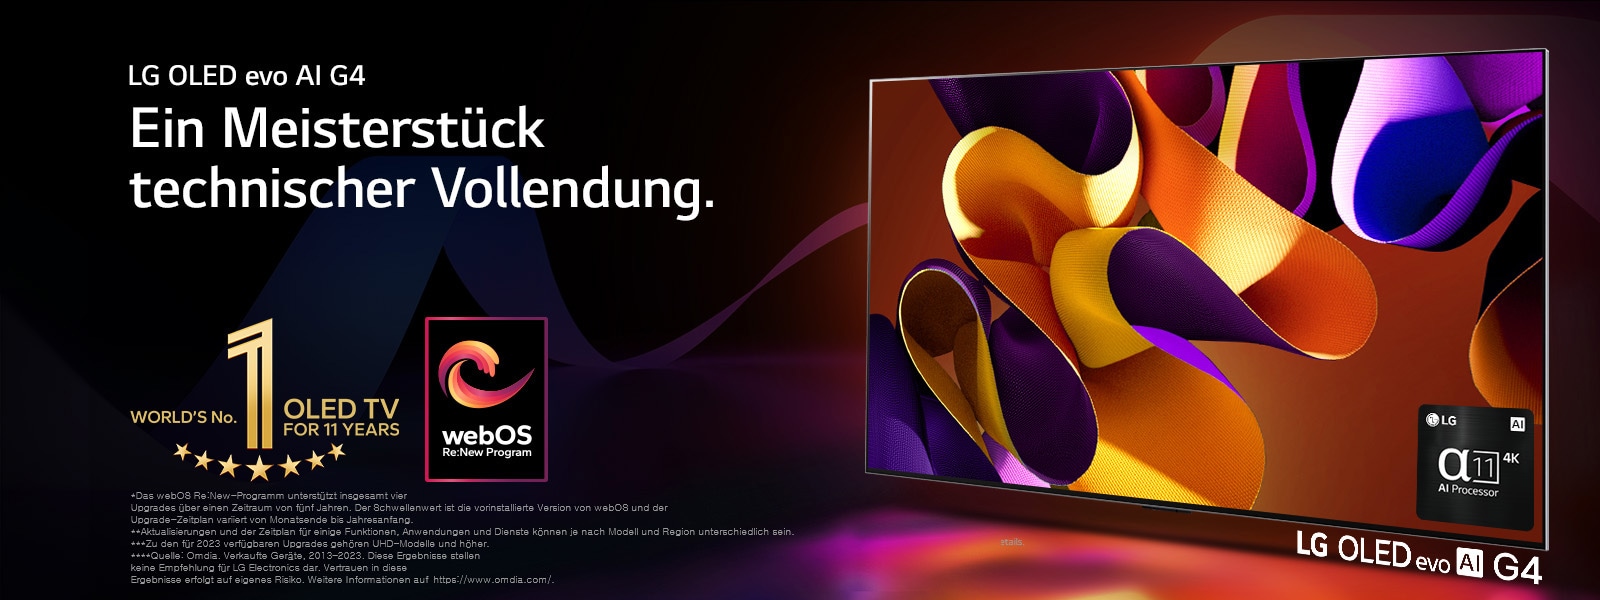 Ein LG OLED evo TV G4 vor einem schwarzen Hintergrund mit dezenten Farbspiralen. Auf dem Bildschirm befindet sich ein abstraktes, farbenfrohes Kunstwerk. Licht strahlt aus dem Bildschirm und wirft bunte Schatten. In der rechten unteren Ecke des Bildschirms befindet sich eine Abbildung des α11 4K KI-Prozessors. Das „World’s No.1 OLED TV For 11 Years“ Gütesiegel und das Logo des „webOS Re:New“-Programms sind auf dem Bild erkennbar. Im Haftungsausschluss heißt es wie folgt: „Das webOS Re:New-Programm unterstützt insgesamt vier Upgrades über einen Zeitraum von fünf Jahren. Der Schwellenwert ist die vorinstallierte Version von webOS und der Upgrade-Zeitplan variiert von Monatsende bis Jahresanfang.“  „Aktualisierungen und der Zeitplan für einige Funktionen, Anwendungen und Dienste können je nach Modell und Region unterschiedlich sein.“  „Zu den für 2023 verfügbaren Upgrades gehören UHD-Modelle und höher.“ „Quelle: Omdia. Verkaufte Geräte, 2013–2023. Diese Ergebnisse stellen keine Empfehlung für LG Electronics dar. Vertrauen in diese Ergebnisse erfolgt auf eigenes Risiko. Weitere Informationen auf https://www.omdia.com/.“